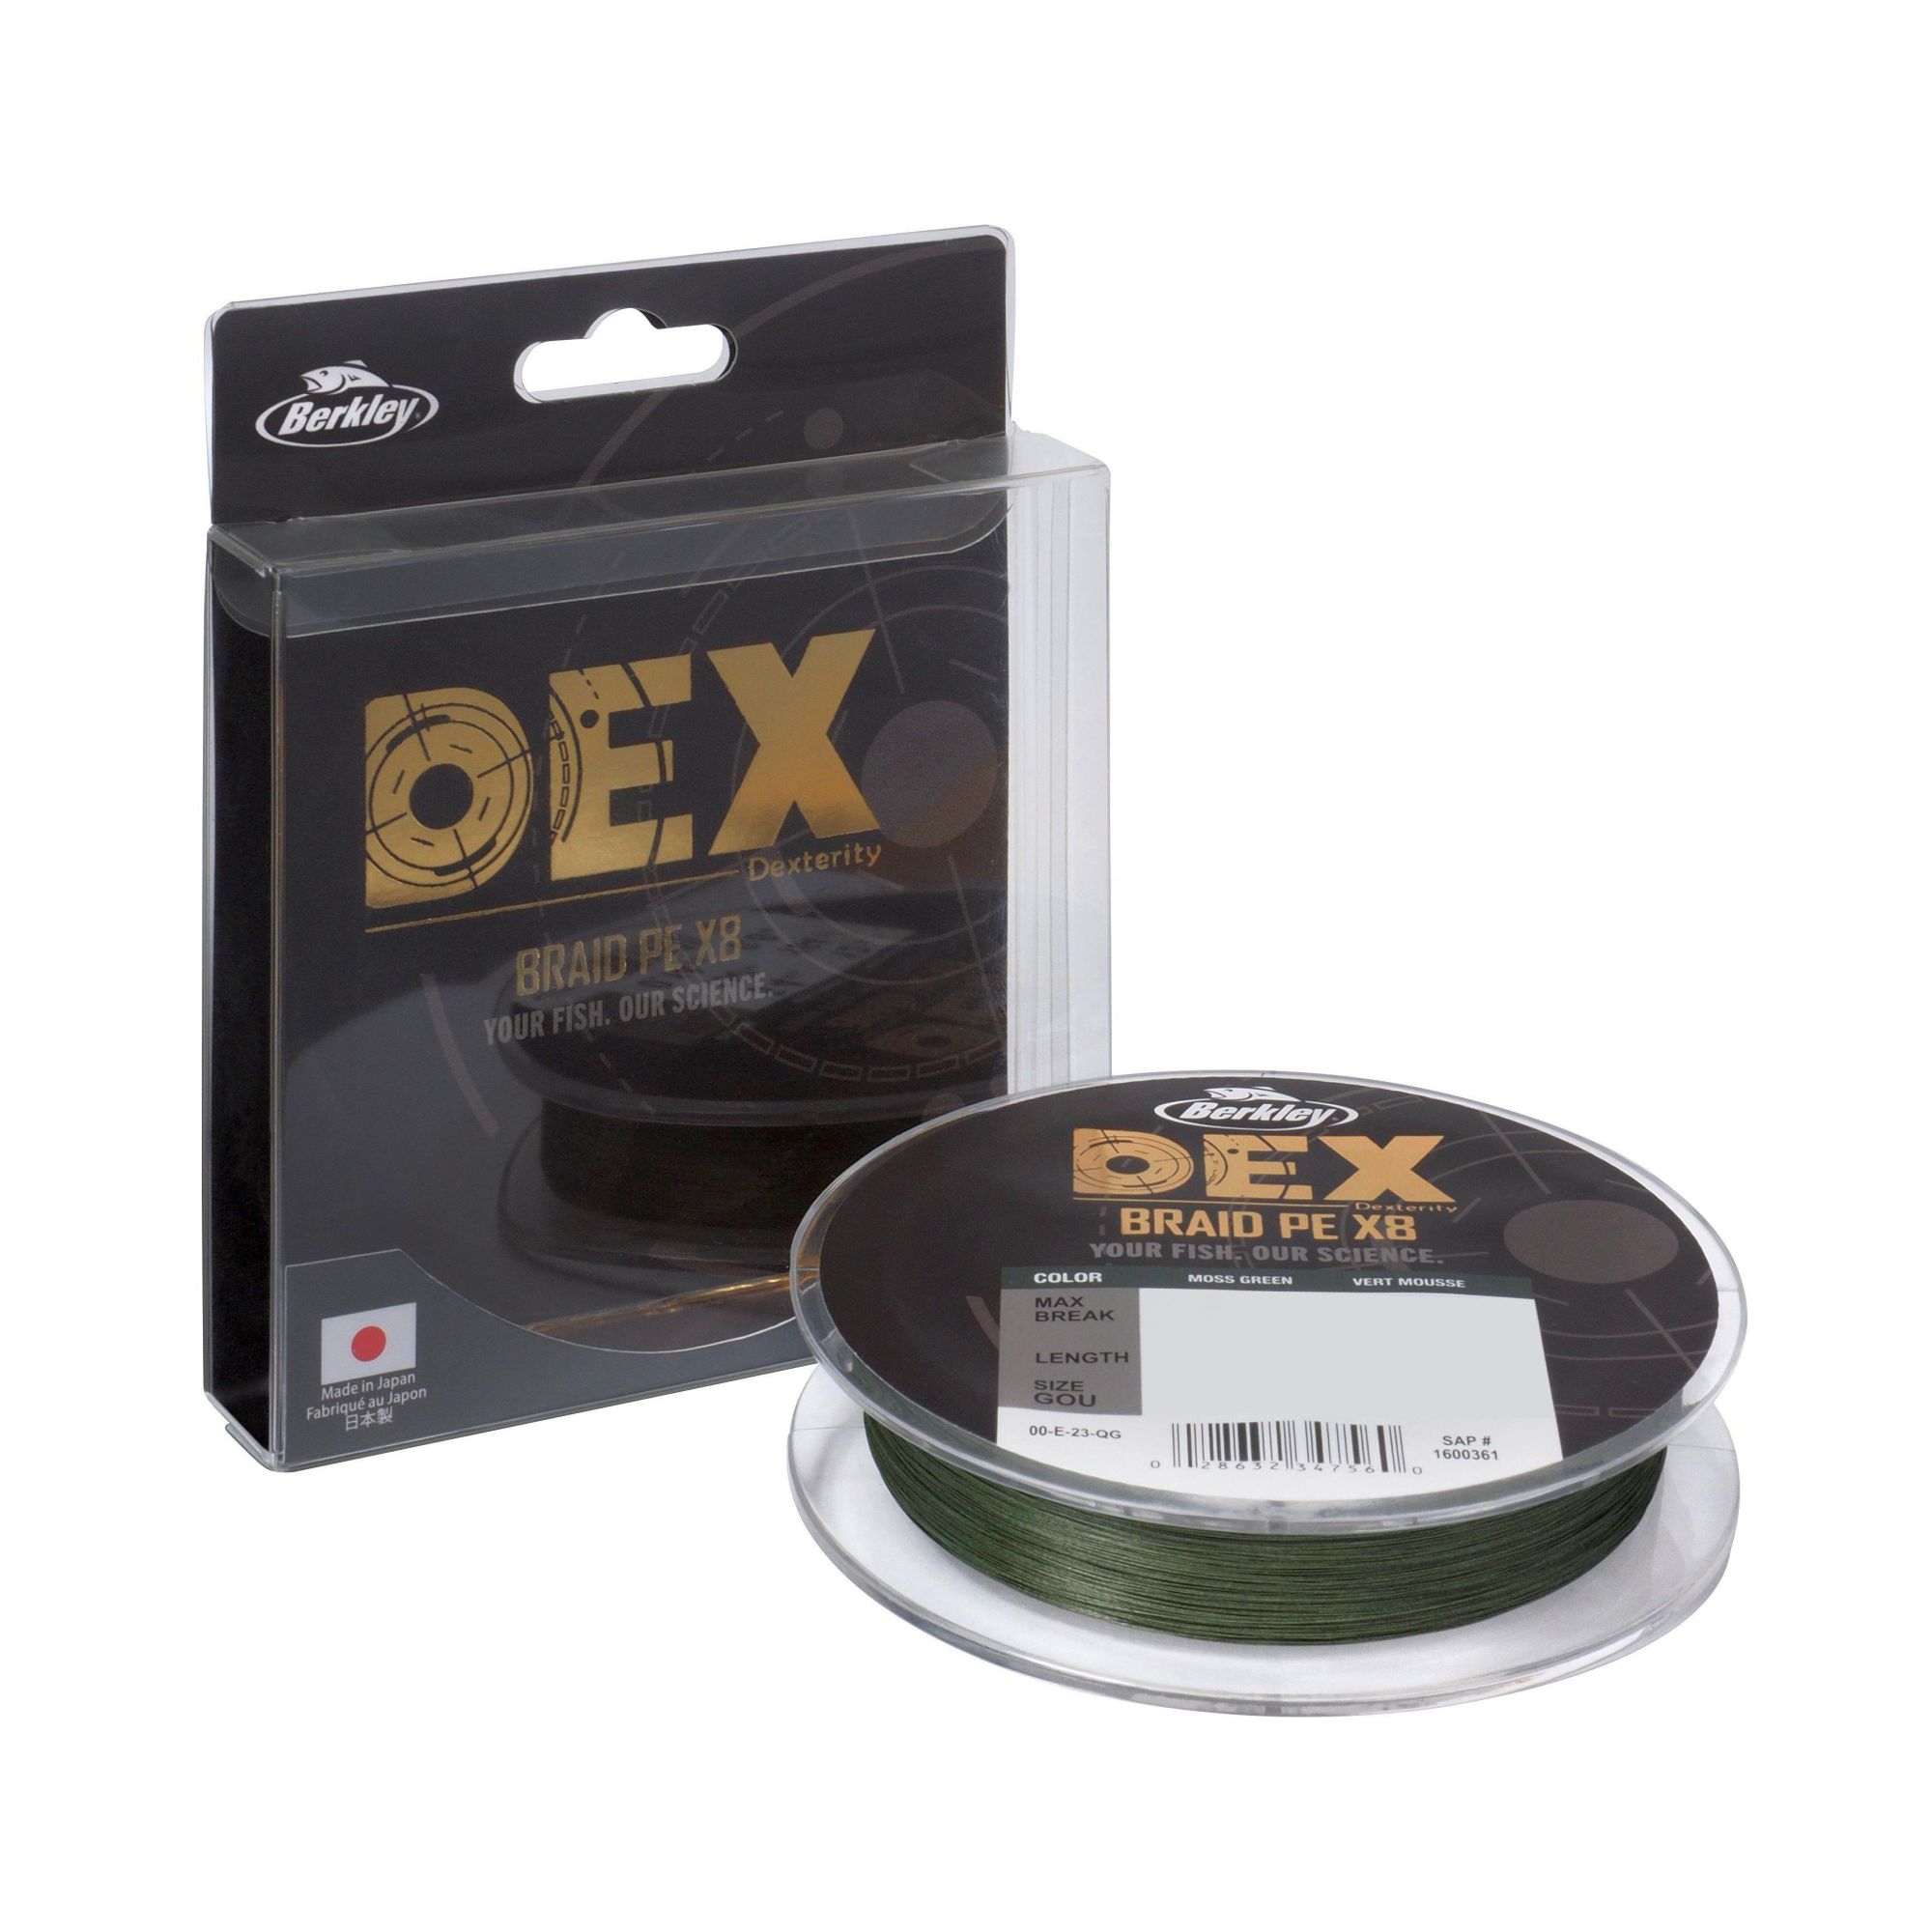 BERKLEY DEX Braid PE X8 Moss Green 150 m 0,12 mm 9 kg